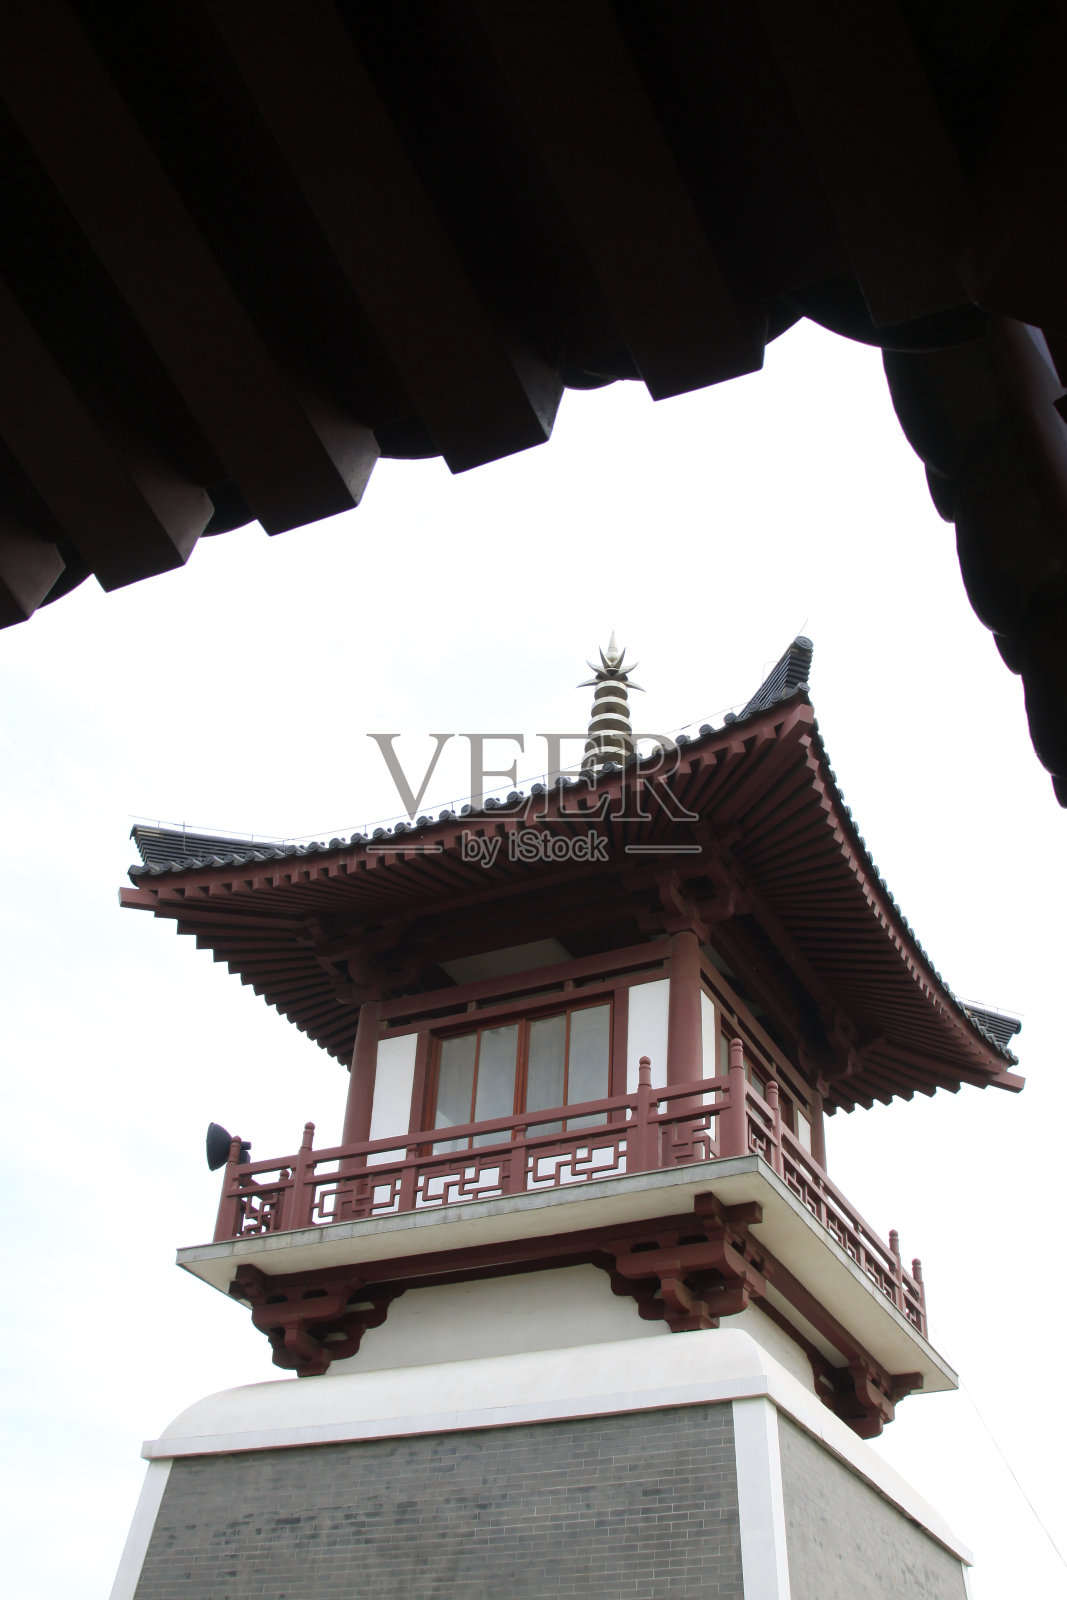 2014年5月10日，中国河北省唐山市兴国寺的钟鼓楼照片摄影图片